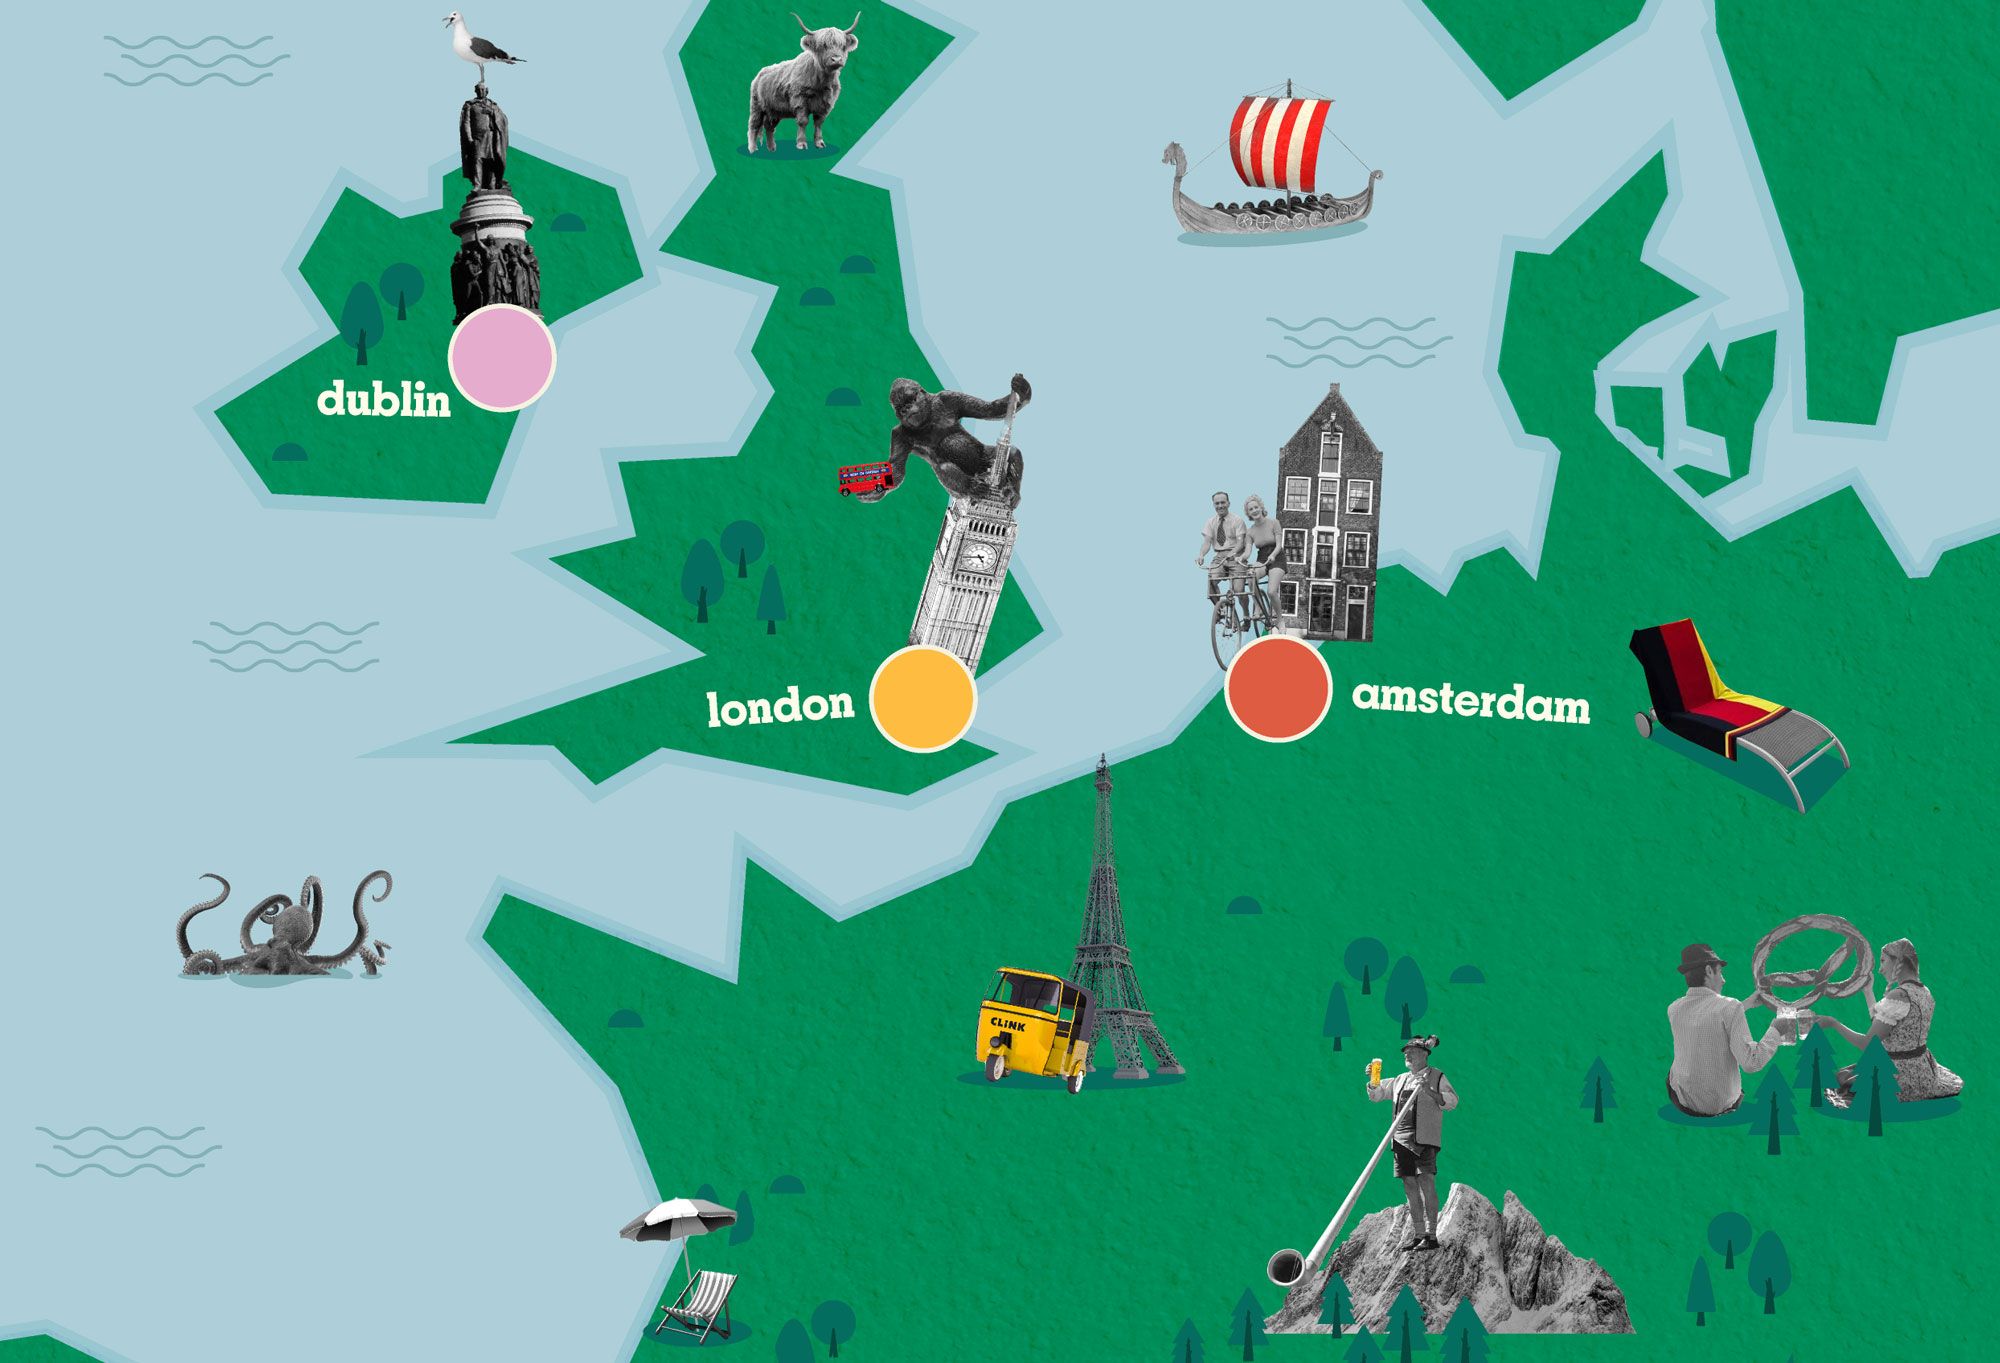 una mappa che mostra le diverse sedi degli ostelli Clink nel continente europeo, come Londra, Amsterdam e Dublino.